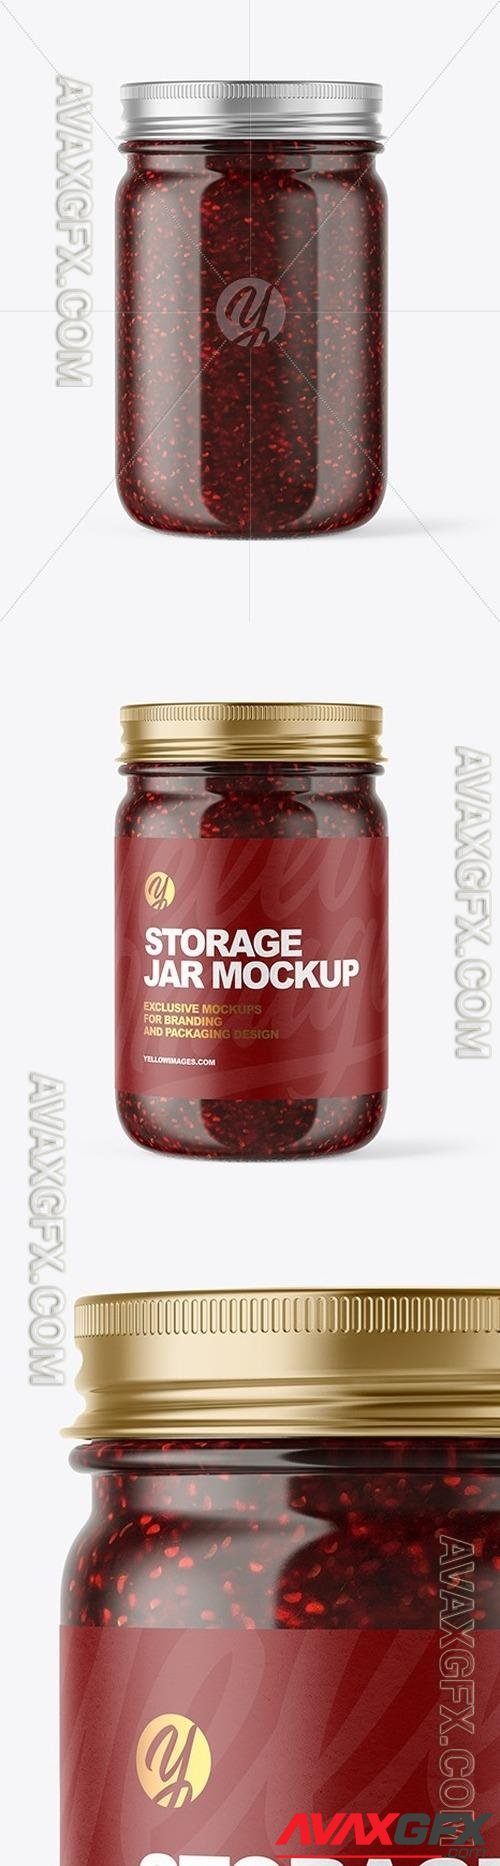 Clear Glass Jar with Raspberry Jam Mockup 51042 TIF